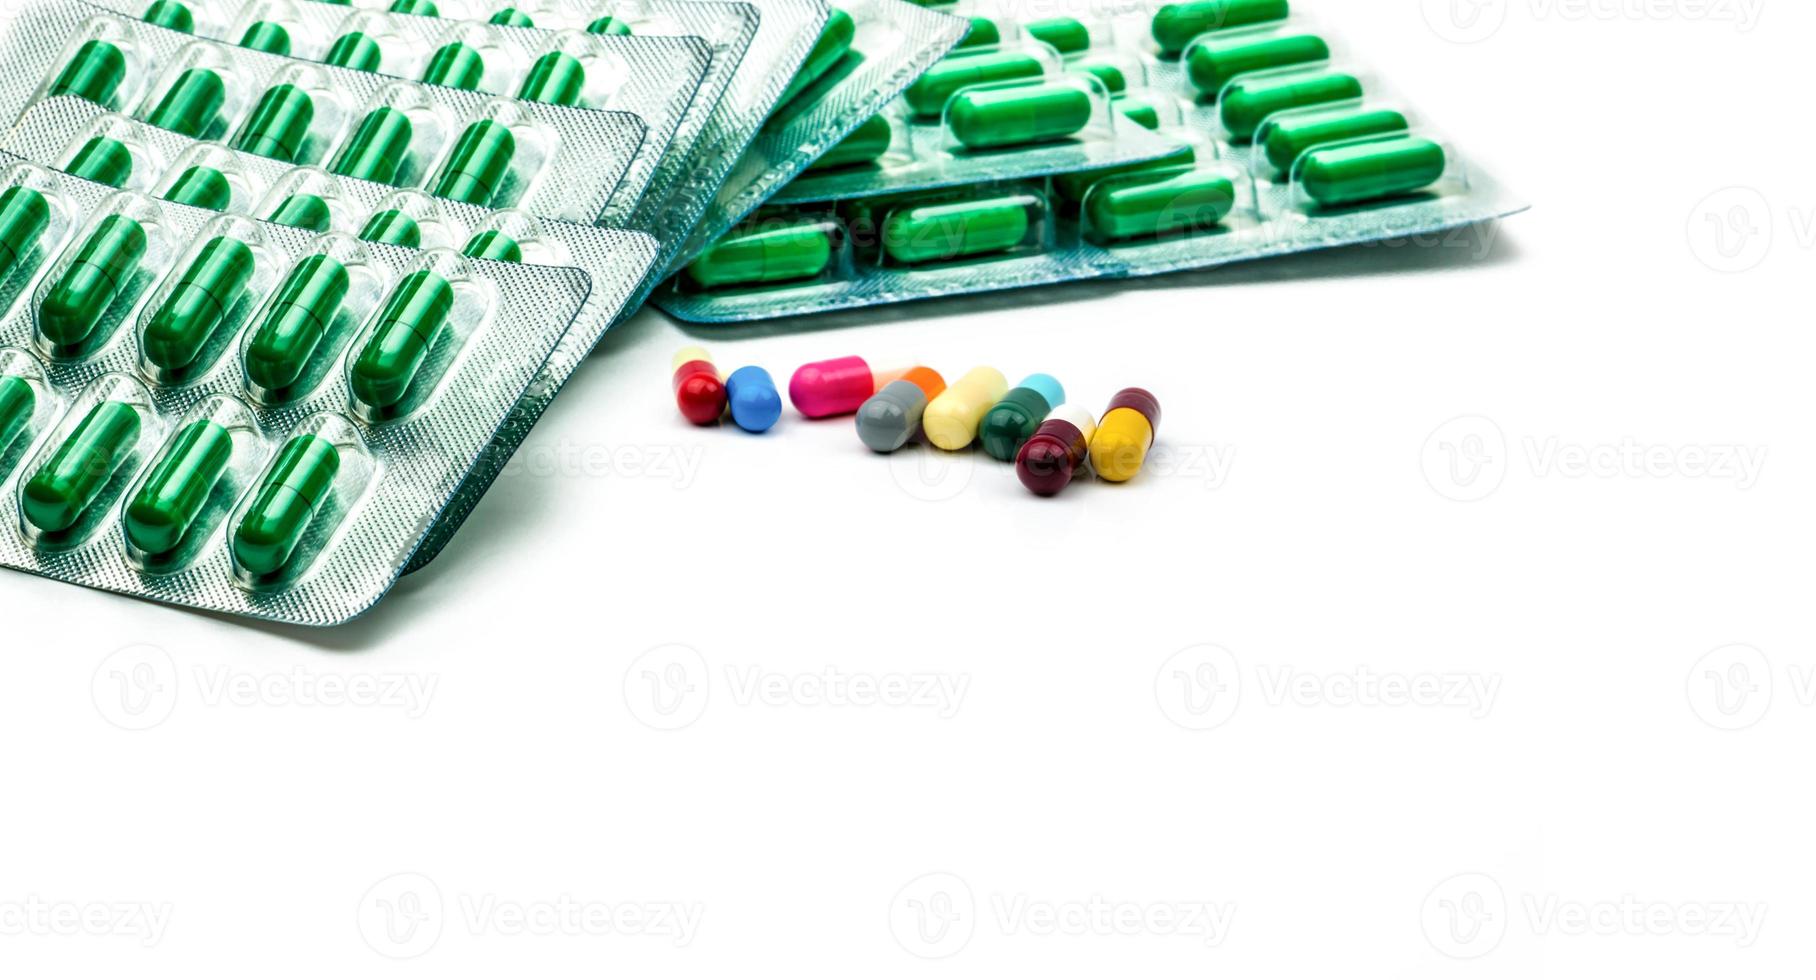 pillola di capsula antibiotica verde in blister e pillola di capsula multicolore su sfondo bianco. concetto di resistenza ai farmaci antibiotici e farmaci da prescrizione. prodotti della farmacia. industria farmaceutica. foto